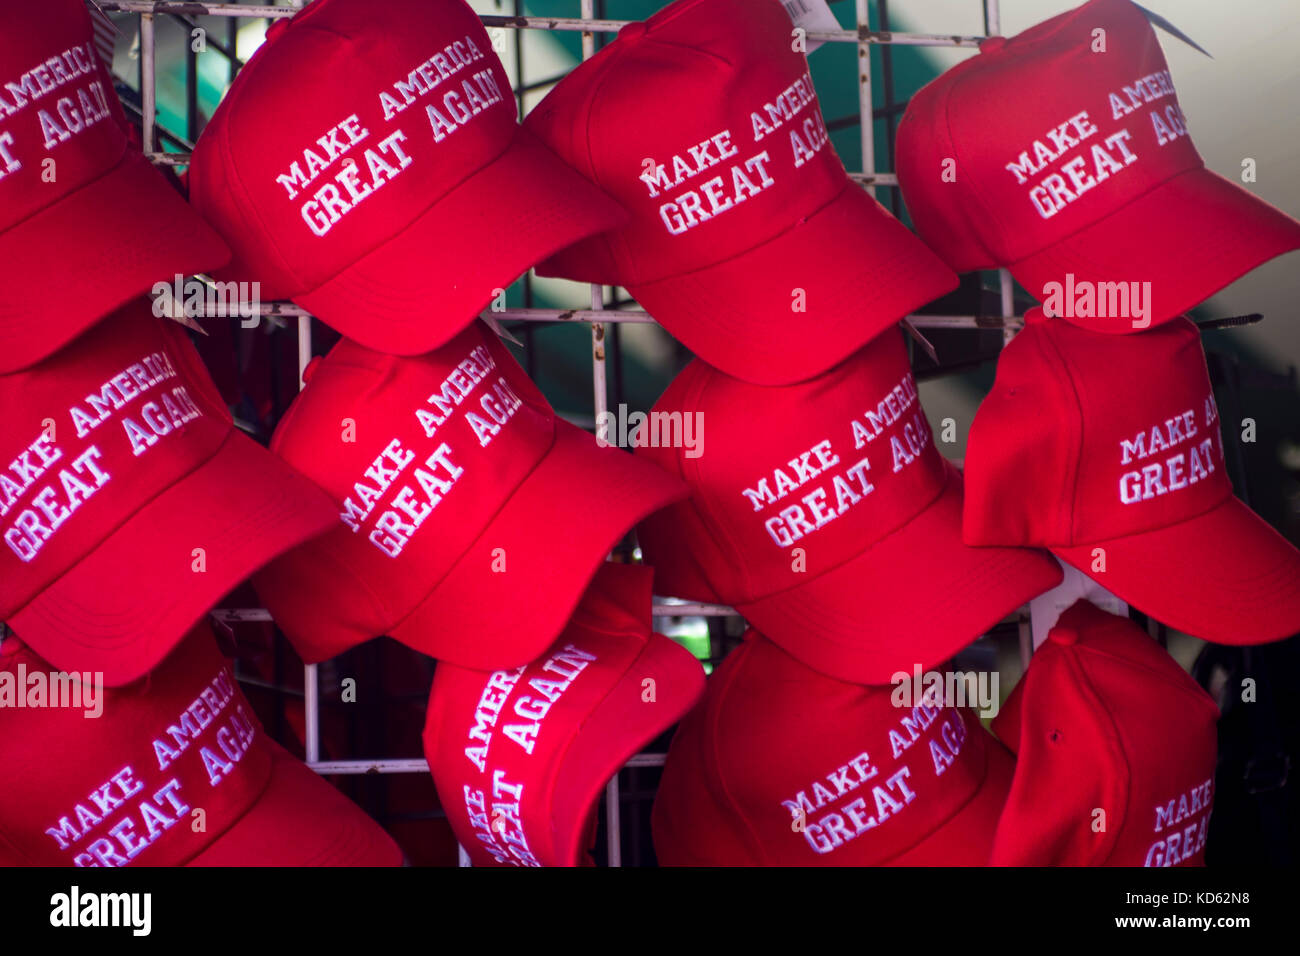 Machen Amerika groß wieder Hüte auf Display und zum Verkauf an der Fryeburg Messe, Fryeburg, Maine, USA Stockfoto